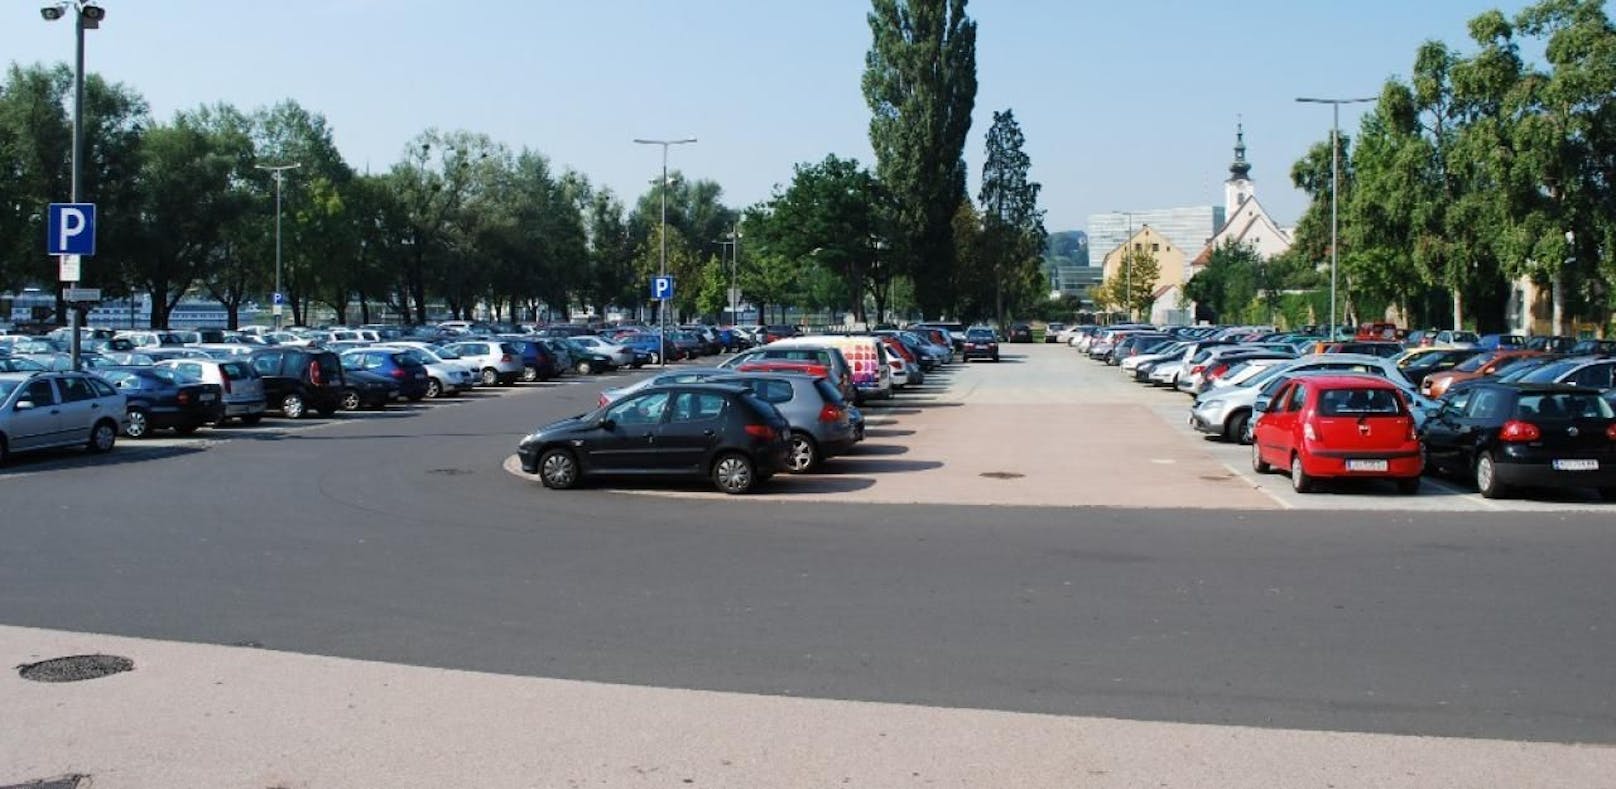 Ab Oktober wird das Urfahrmarktgelände nicht mehr als Parkplatz zur Verfügung stehen.